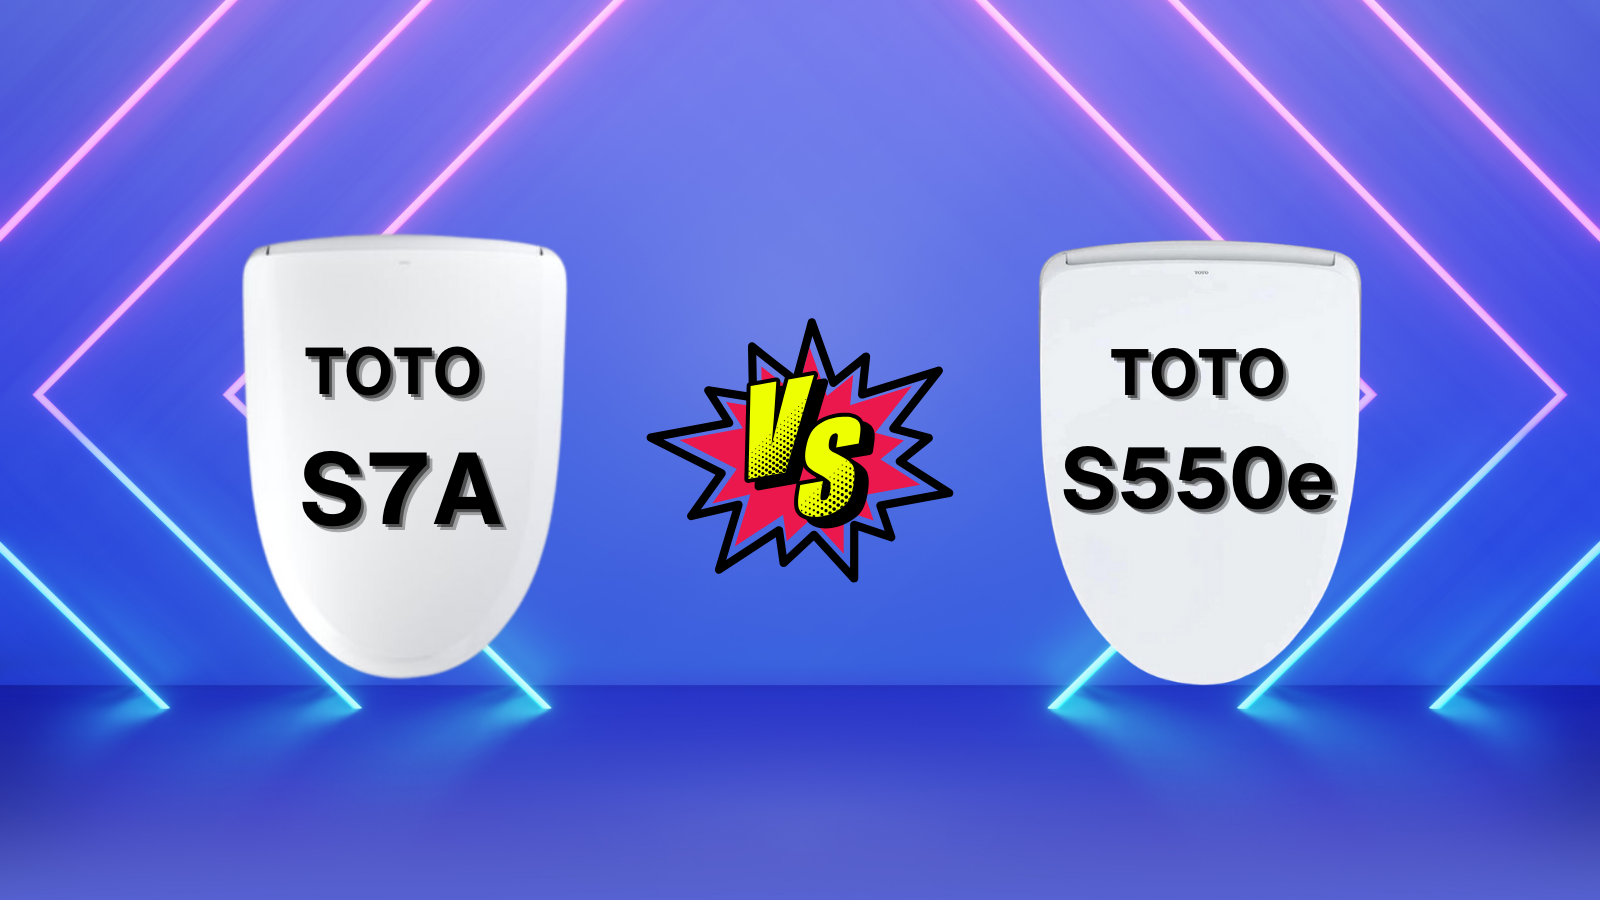 toto s7a vs s550e washlet comparison 